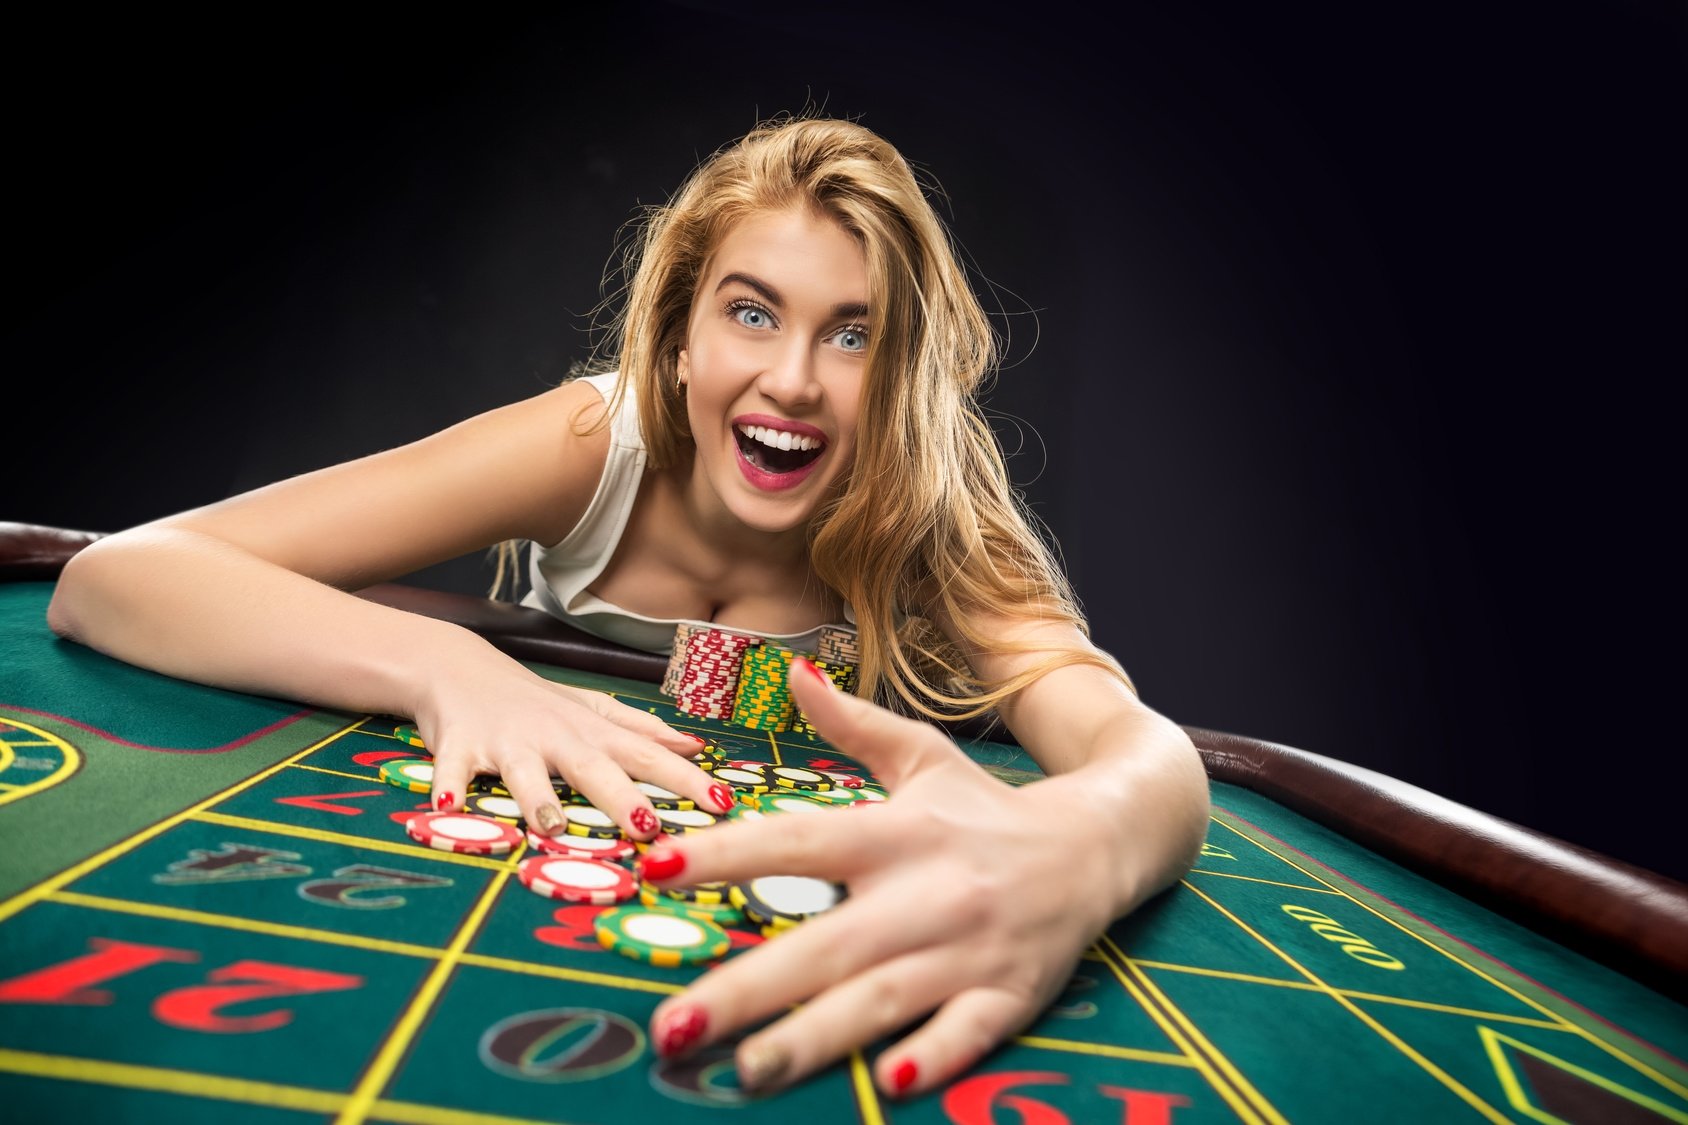 Как не играть в казино онлайн особенности поведения в казино меняйлов смотреть онлайн